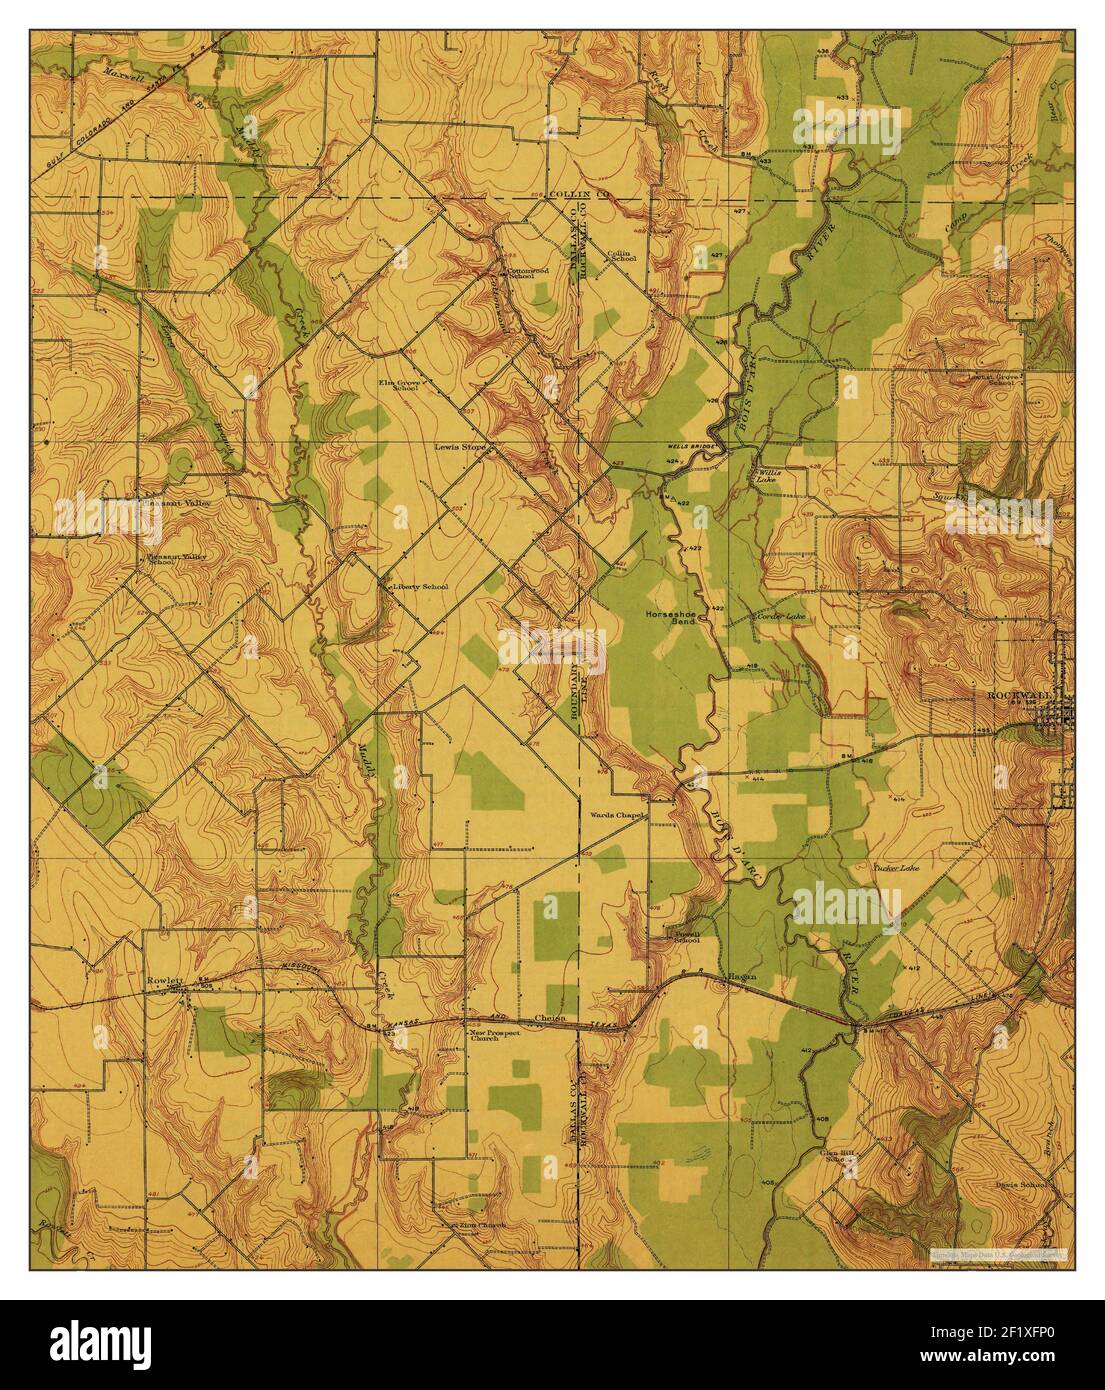 Rockwall, Texas, Karte 1912, 1:31680, Vereinigte Staaten von Amerika von Timeless Maps, Daten U.S. Geological Survey Stockfoto